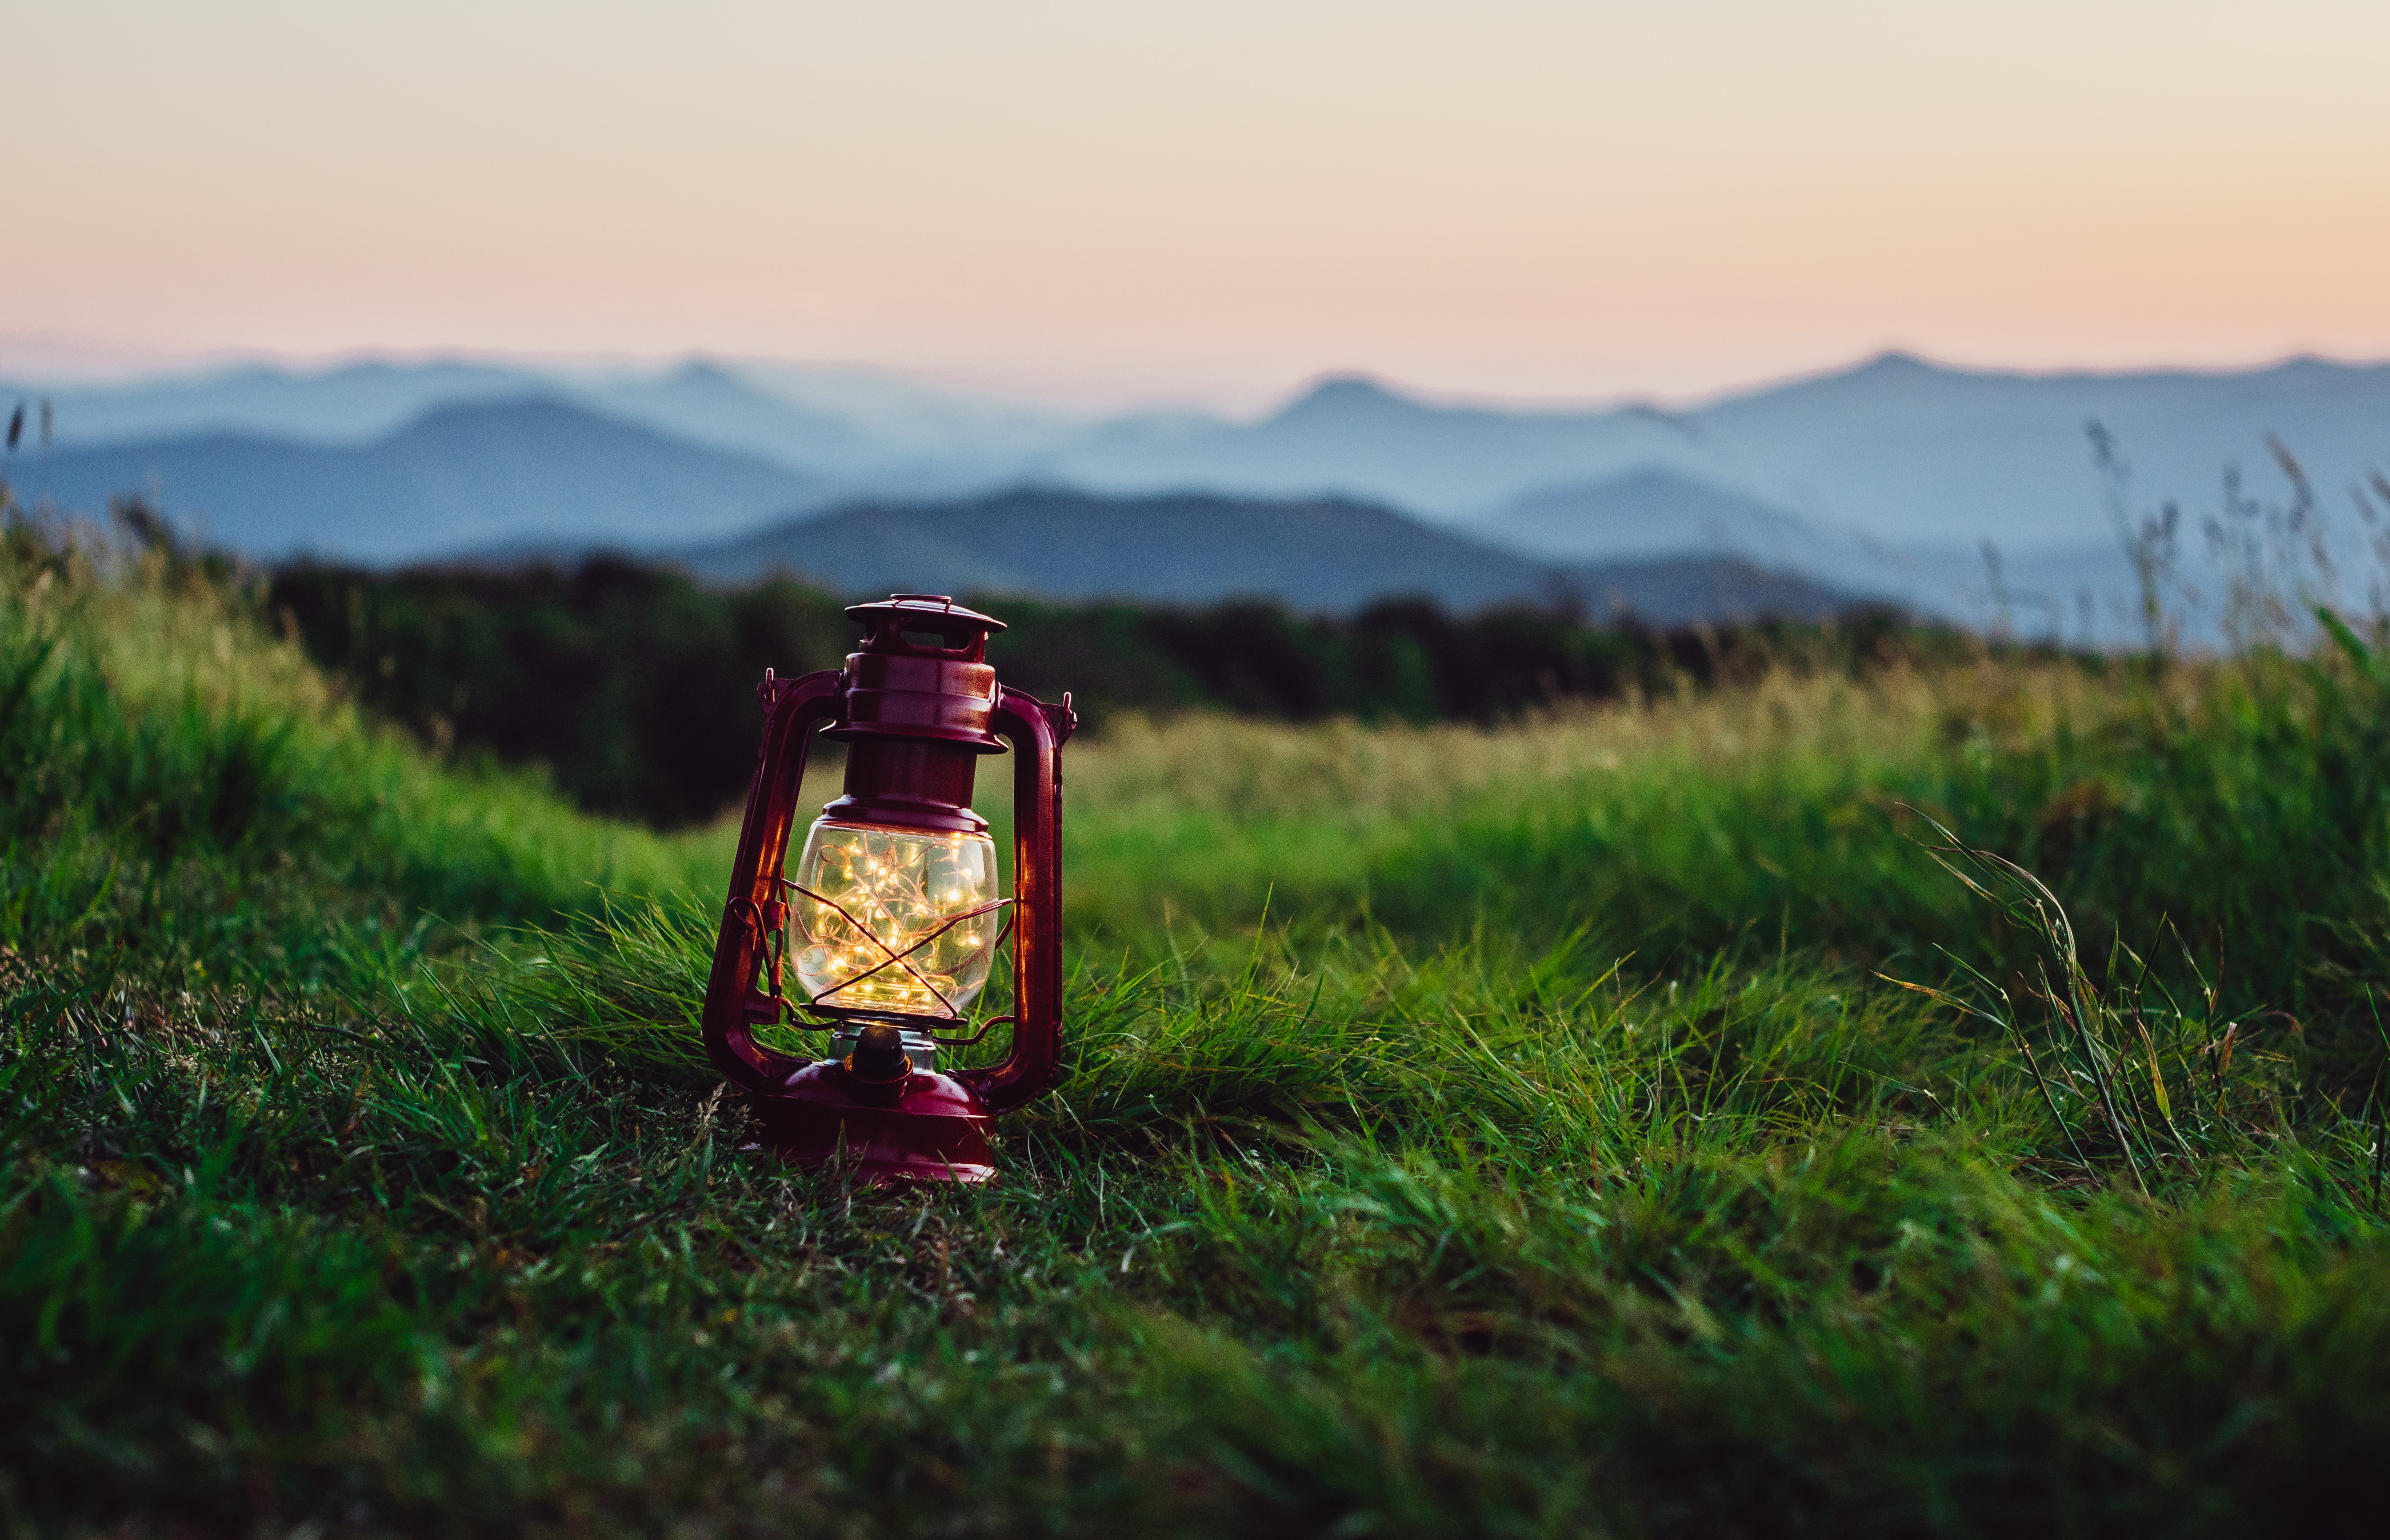 lamp, lantern, grass, miscellanea, miscellaneous, dahl, distance, garland cellphone